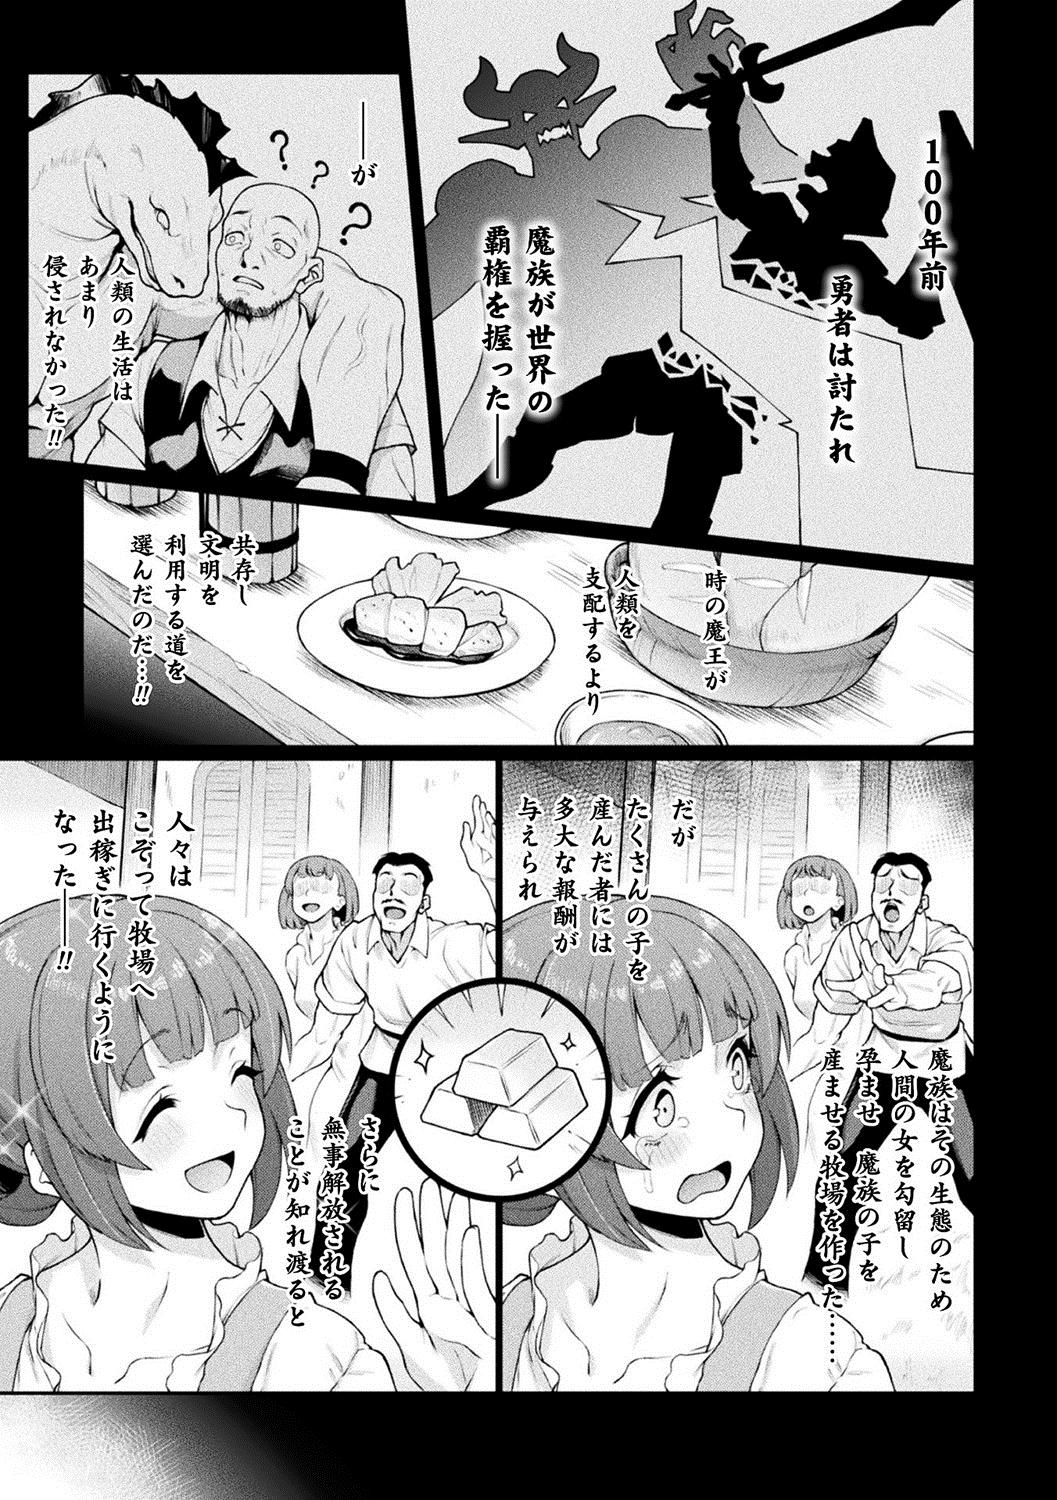 Spreading Bessatsu Comic Unreal Ningen Bokujou Hen Vol. 10 Masterbation - Page 5